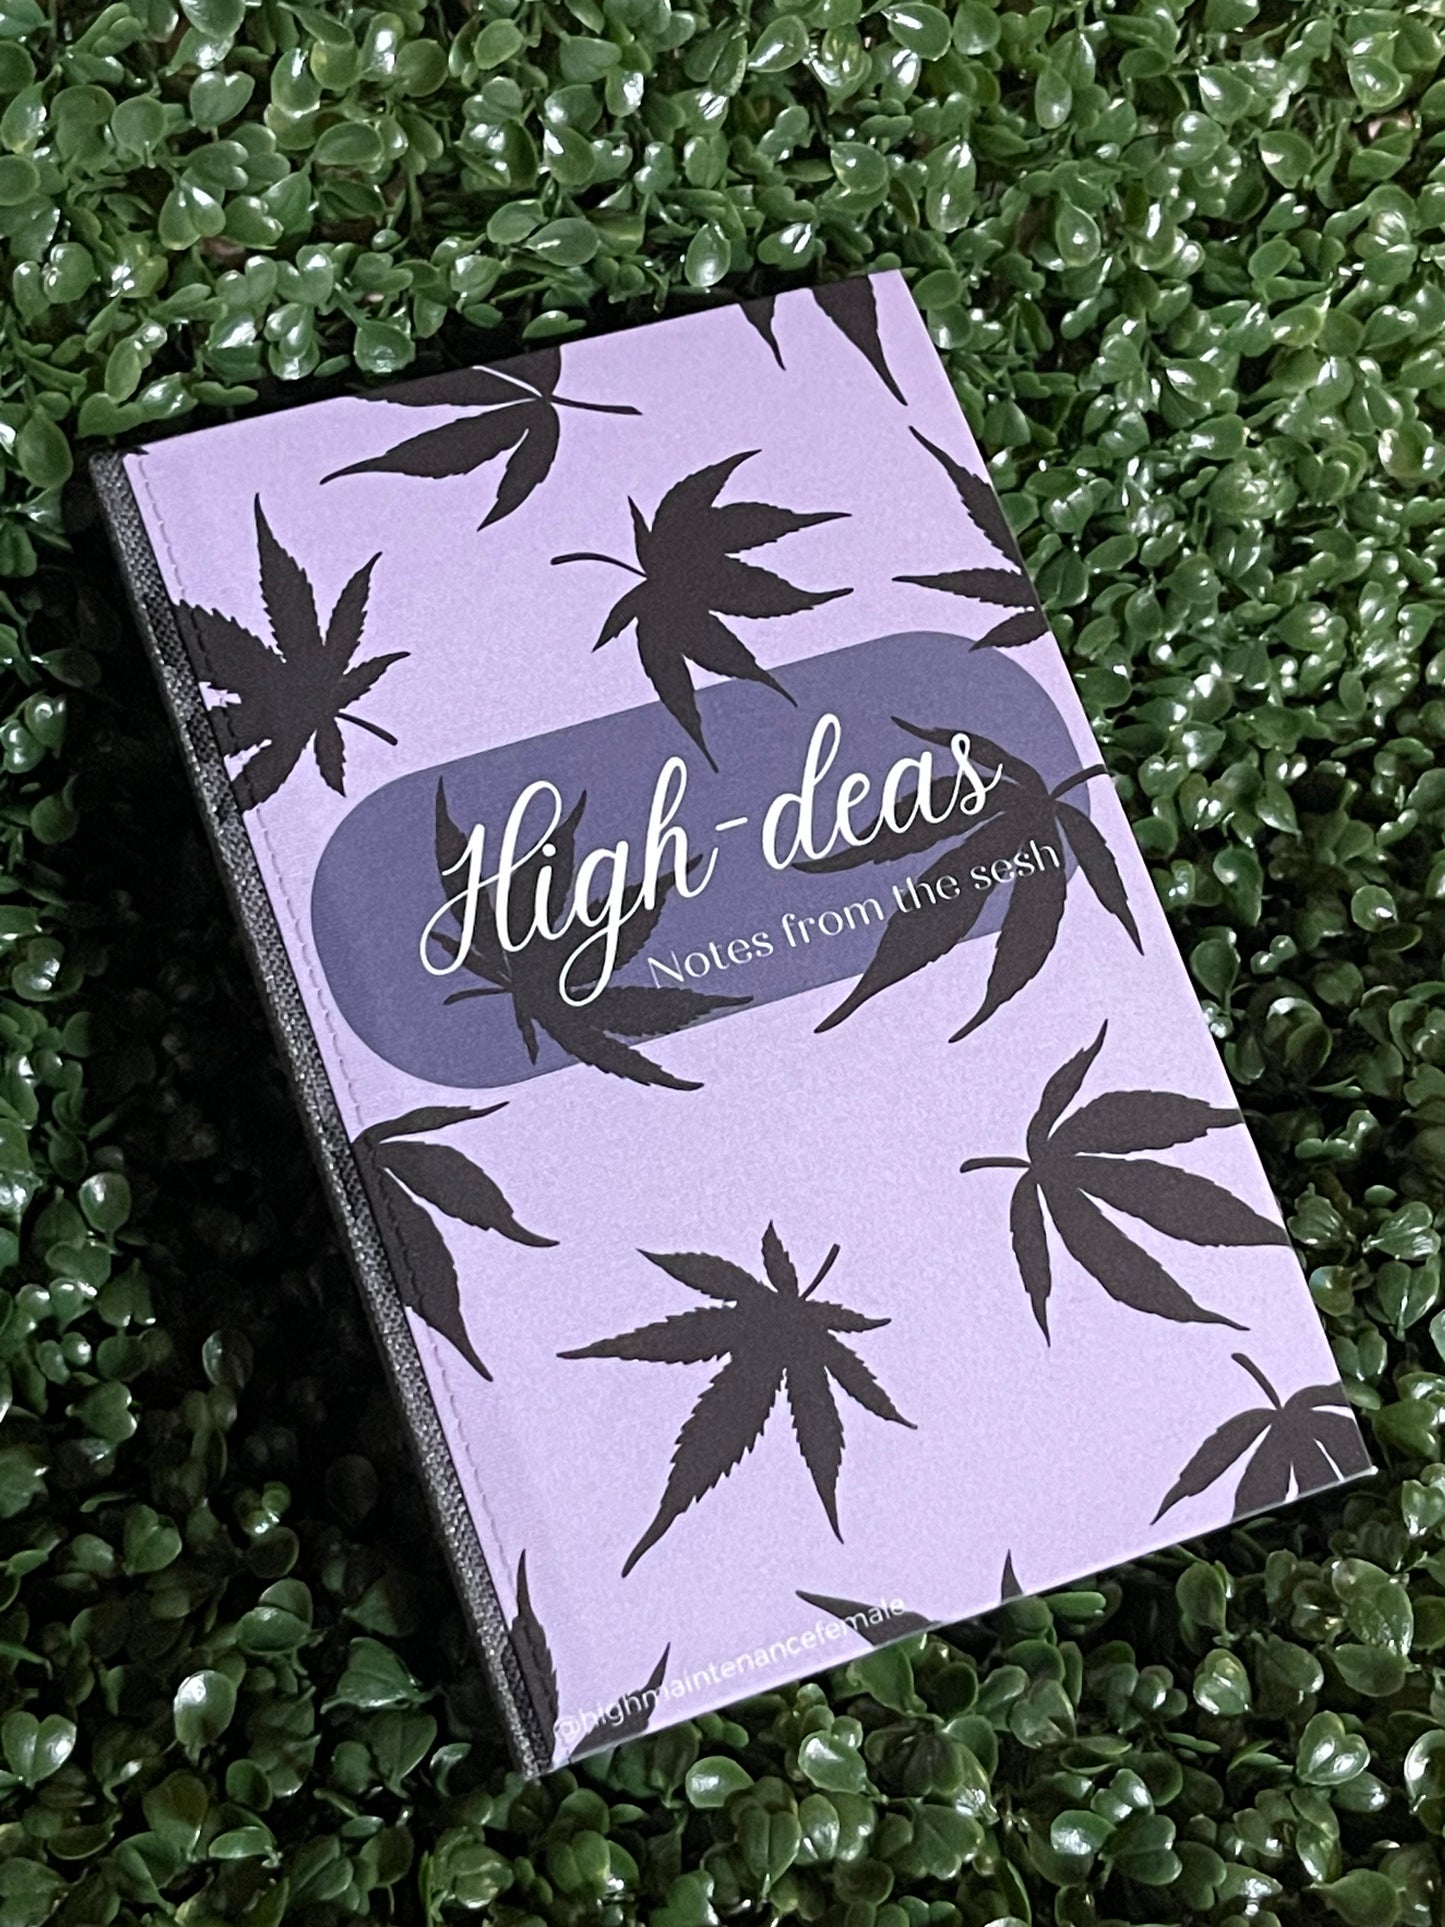 High-deas Journal